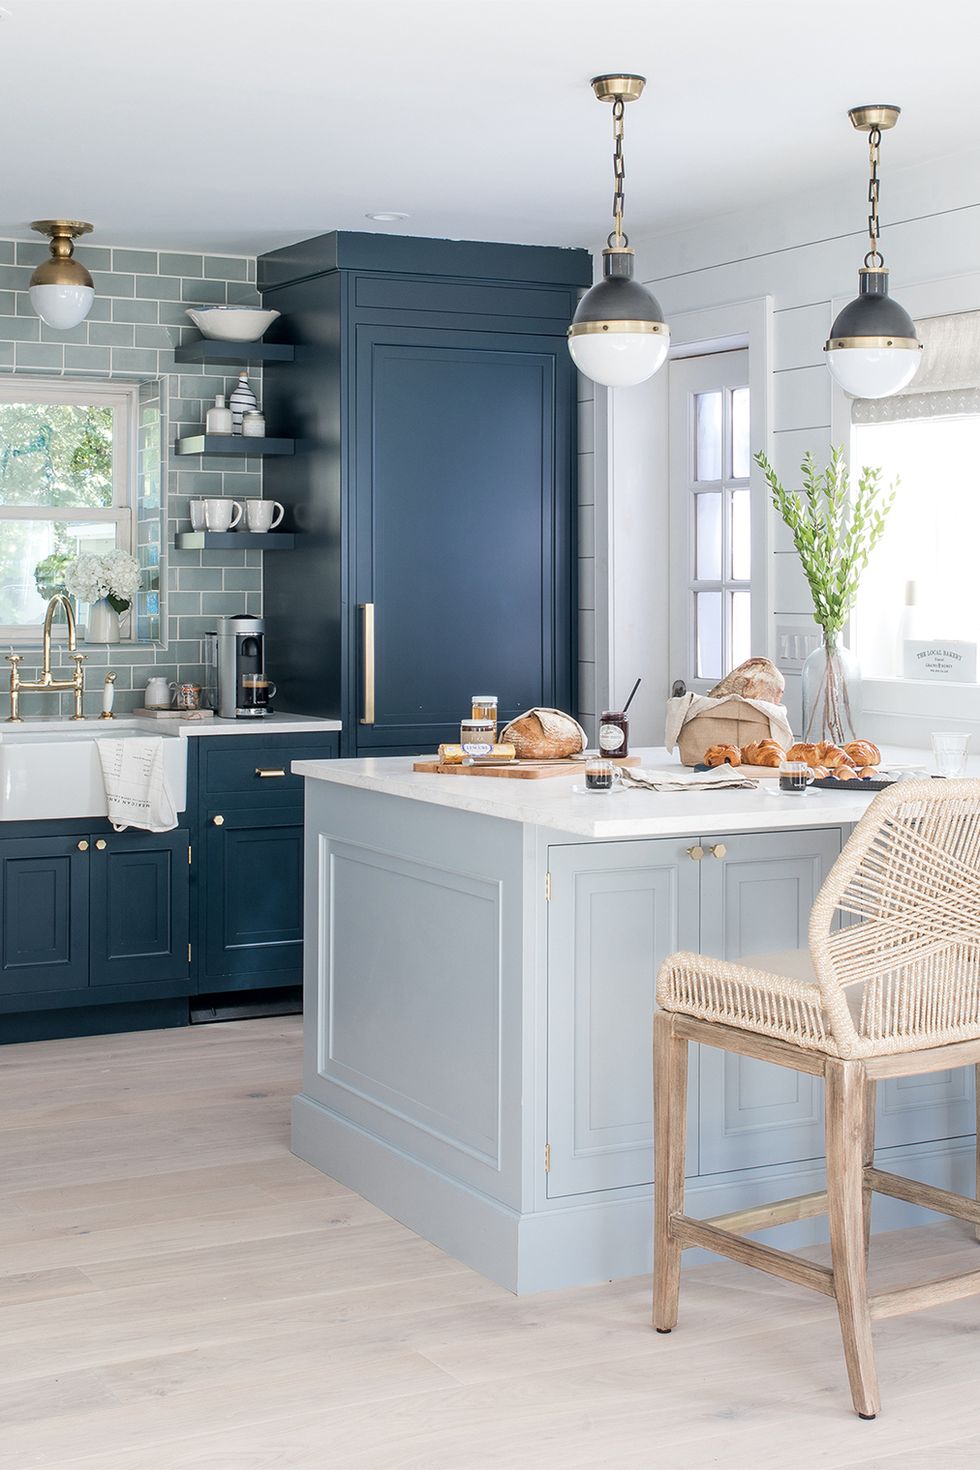 Phòng bếp trong ngôi nhà vùng ven biển này là minh chứng cho sự thay đổi sắc thái của gam màu xanh lam để trang trí nội thất cho phòng bếp. Từ màu xanh đậm của tủ bếp, kệ mở đến  backsplash xanh lam nhạt cho cái nhìn vừa cổ điển vừa hiện đại.